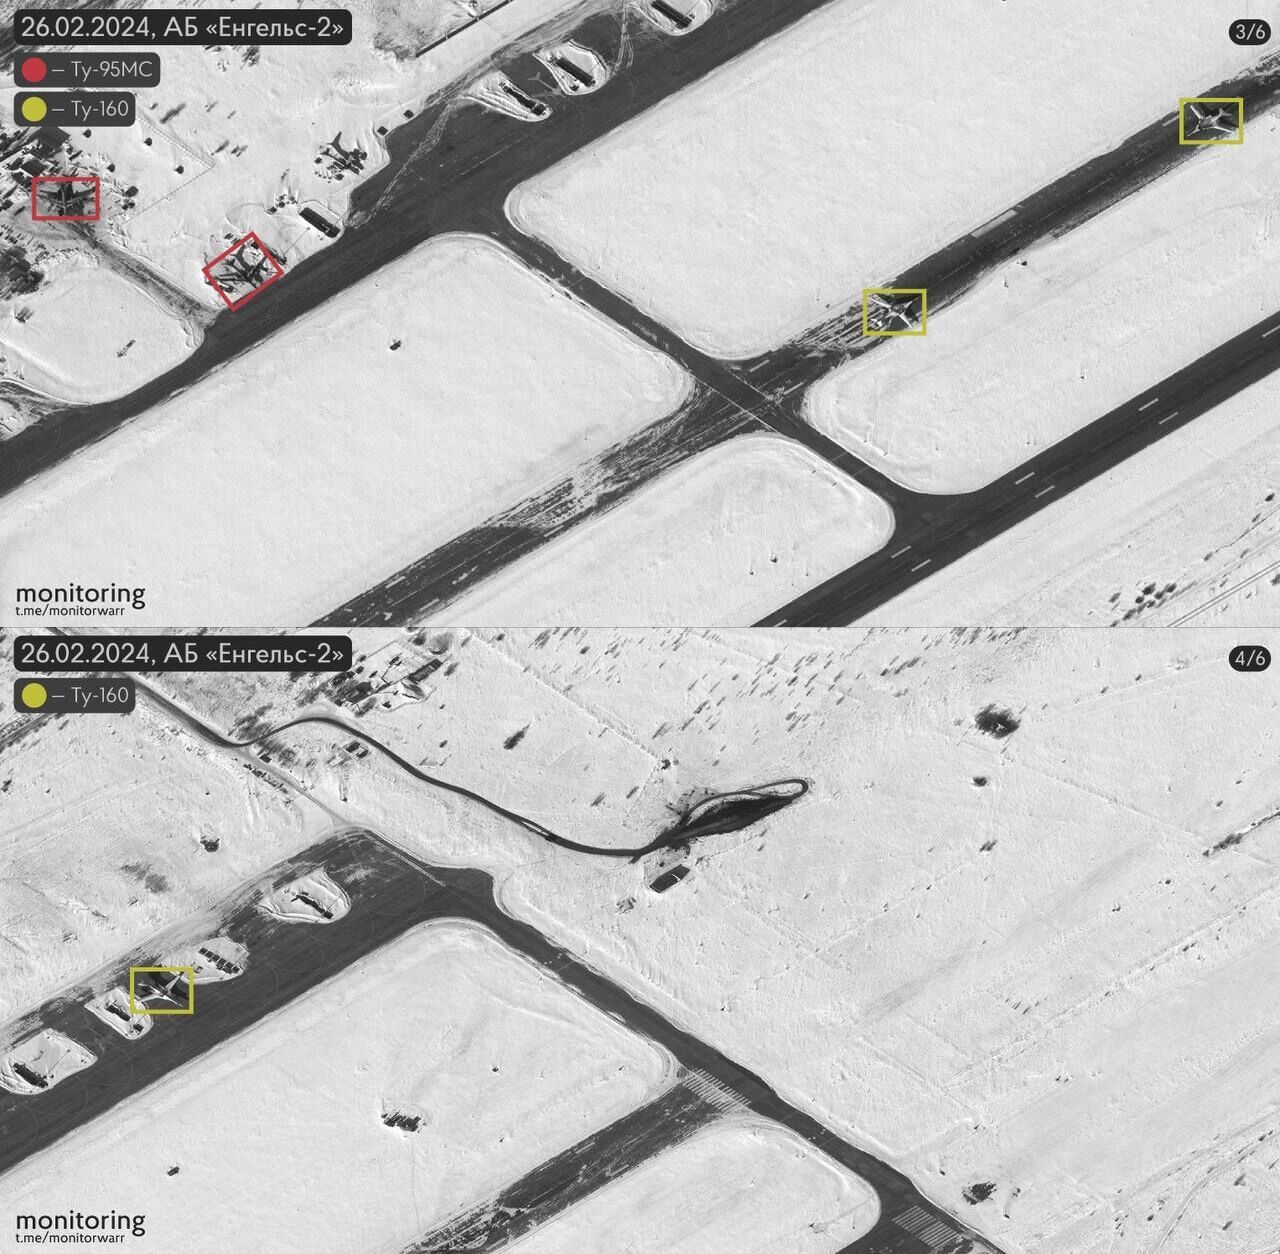 Вісім літаків було, чотири додалося: з'явились супутникові знімки аеродрому "Енгельс-2" у Росії. Фото
